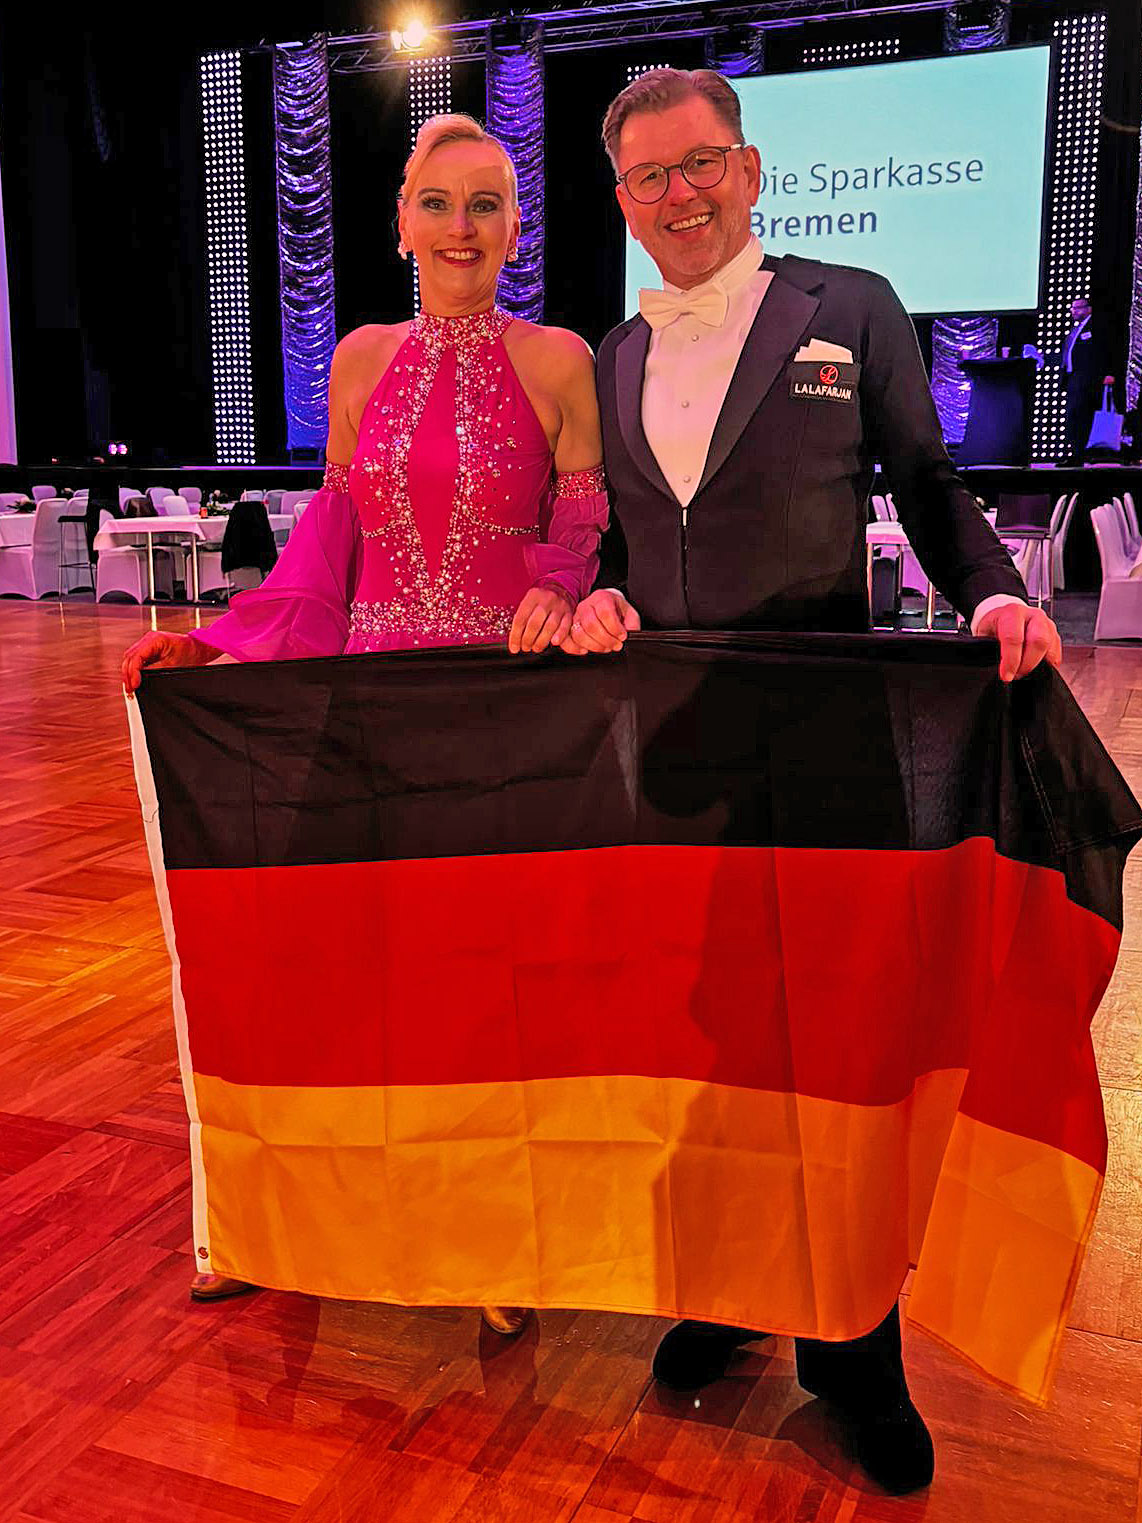 Anja und Frank starten in WDSF-Turnier